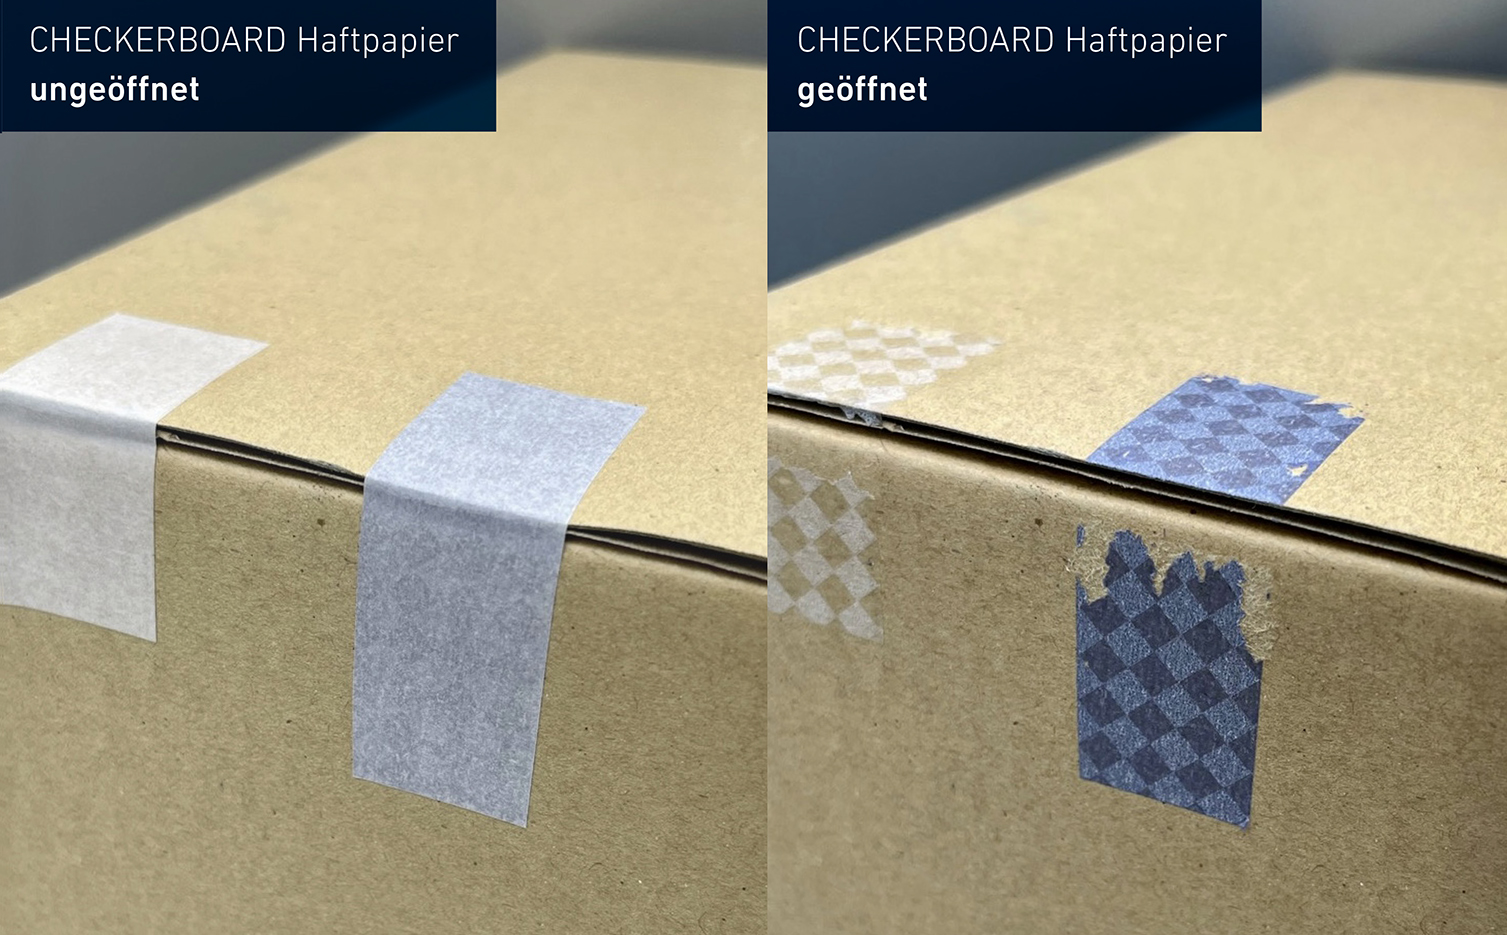 Das neue Checkerboard-Haftmaterial kann mit transparentem oder eingefärbtem Klebstoff (hier blau) ausgestattet werden